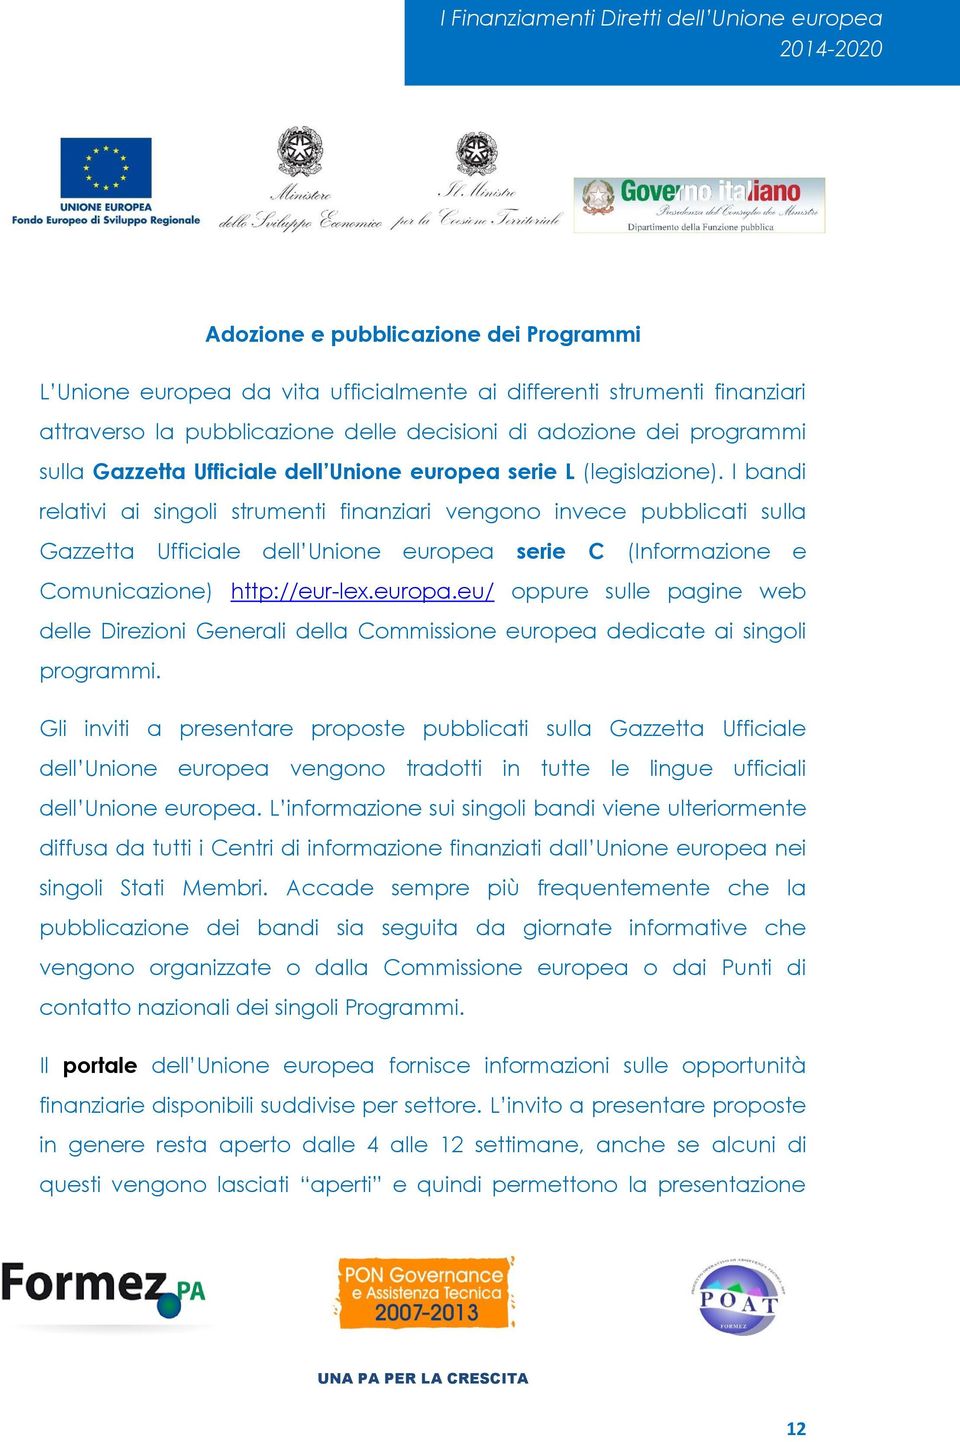 I bandi relativi ai singoli strumenti finanziari vengono invece pubblicati sulla Gazzetta Ufficiale dell Unione europea serie C (Informazione e Comunicazione) http://eur-lex.europa.